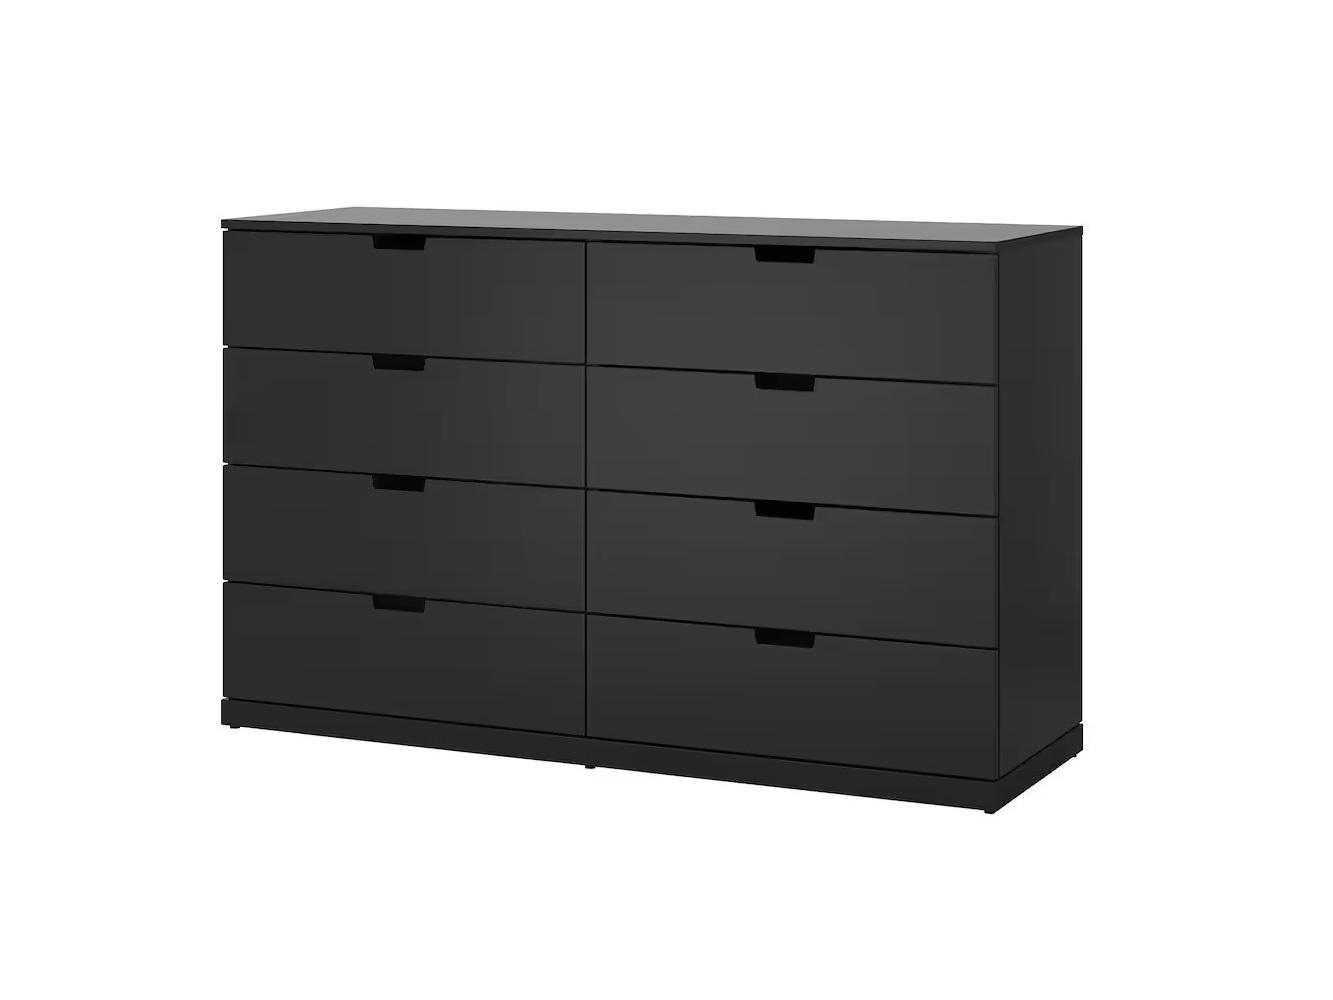 Комод Нордли 13 black ИКЕА (IKEA) изображение товара